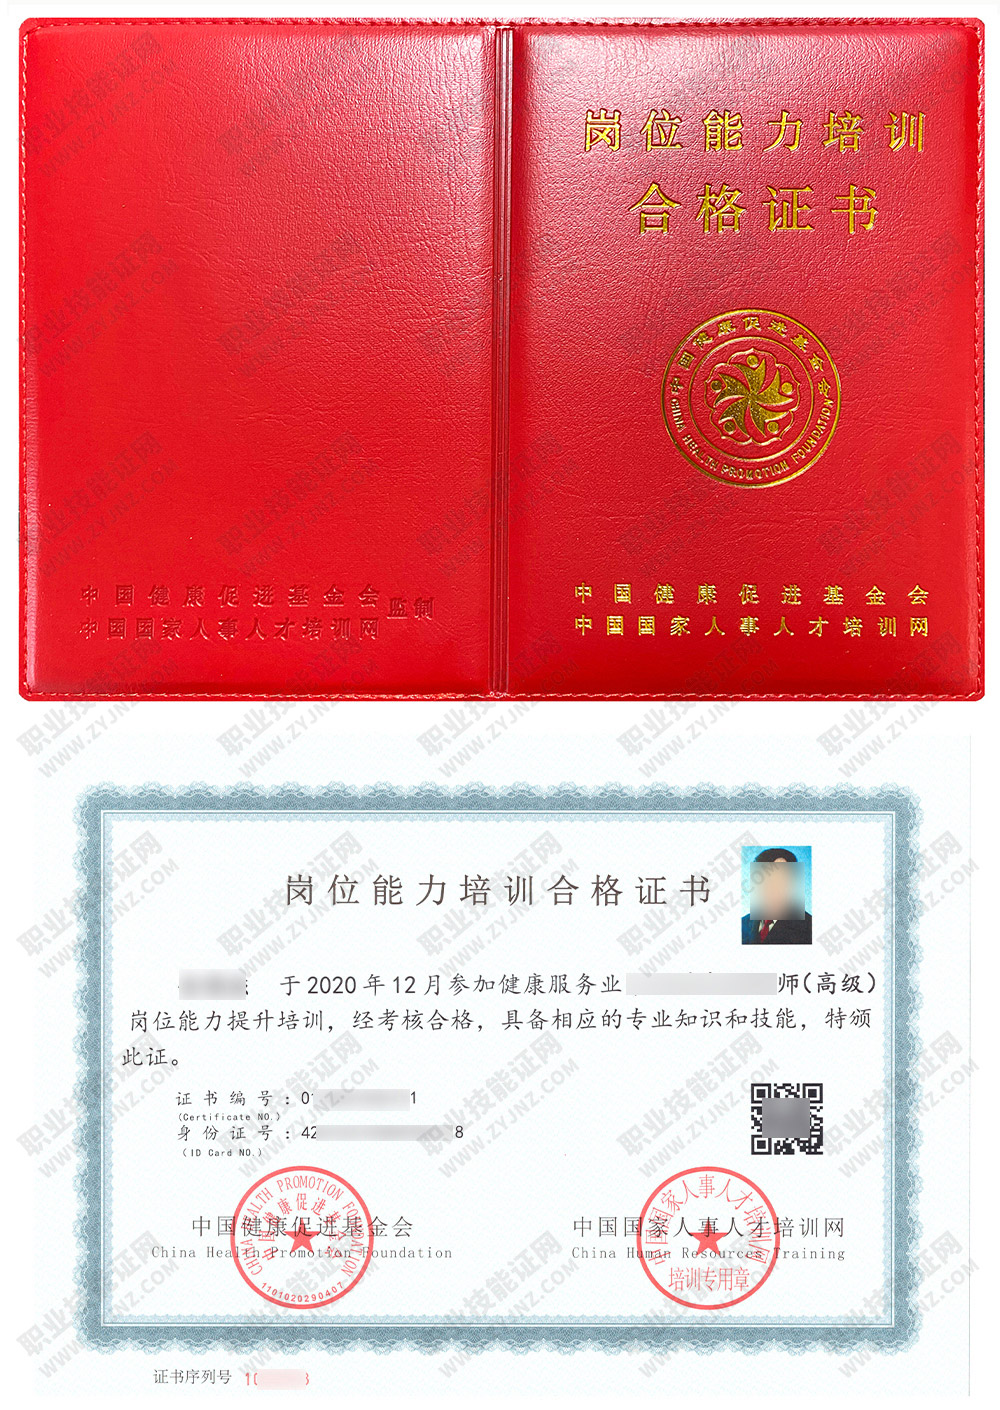 中国国家人事人才培训网 养生保健师 岗位能力培训合格证书